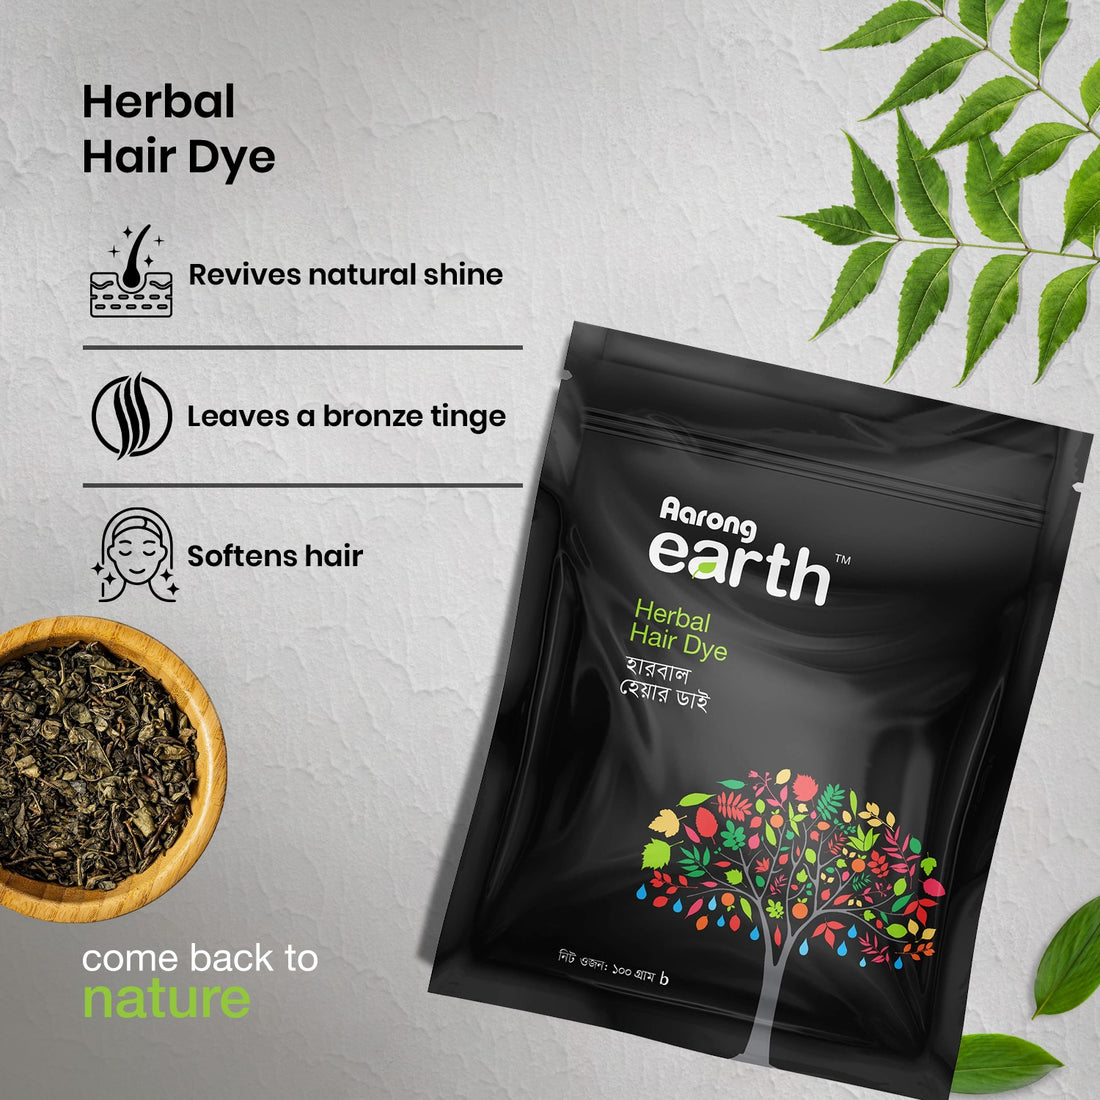 Aarong Earth Herbal Hair Dye (100gm)